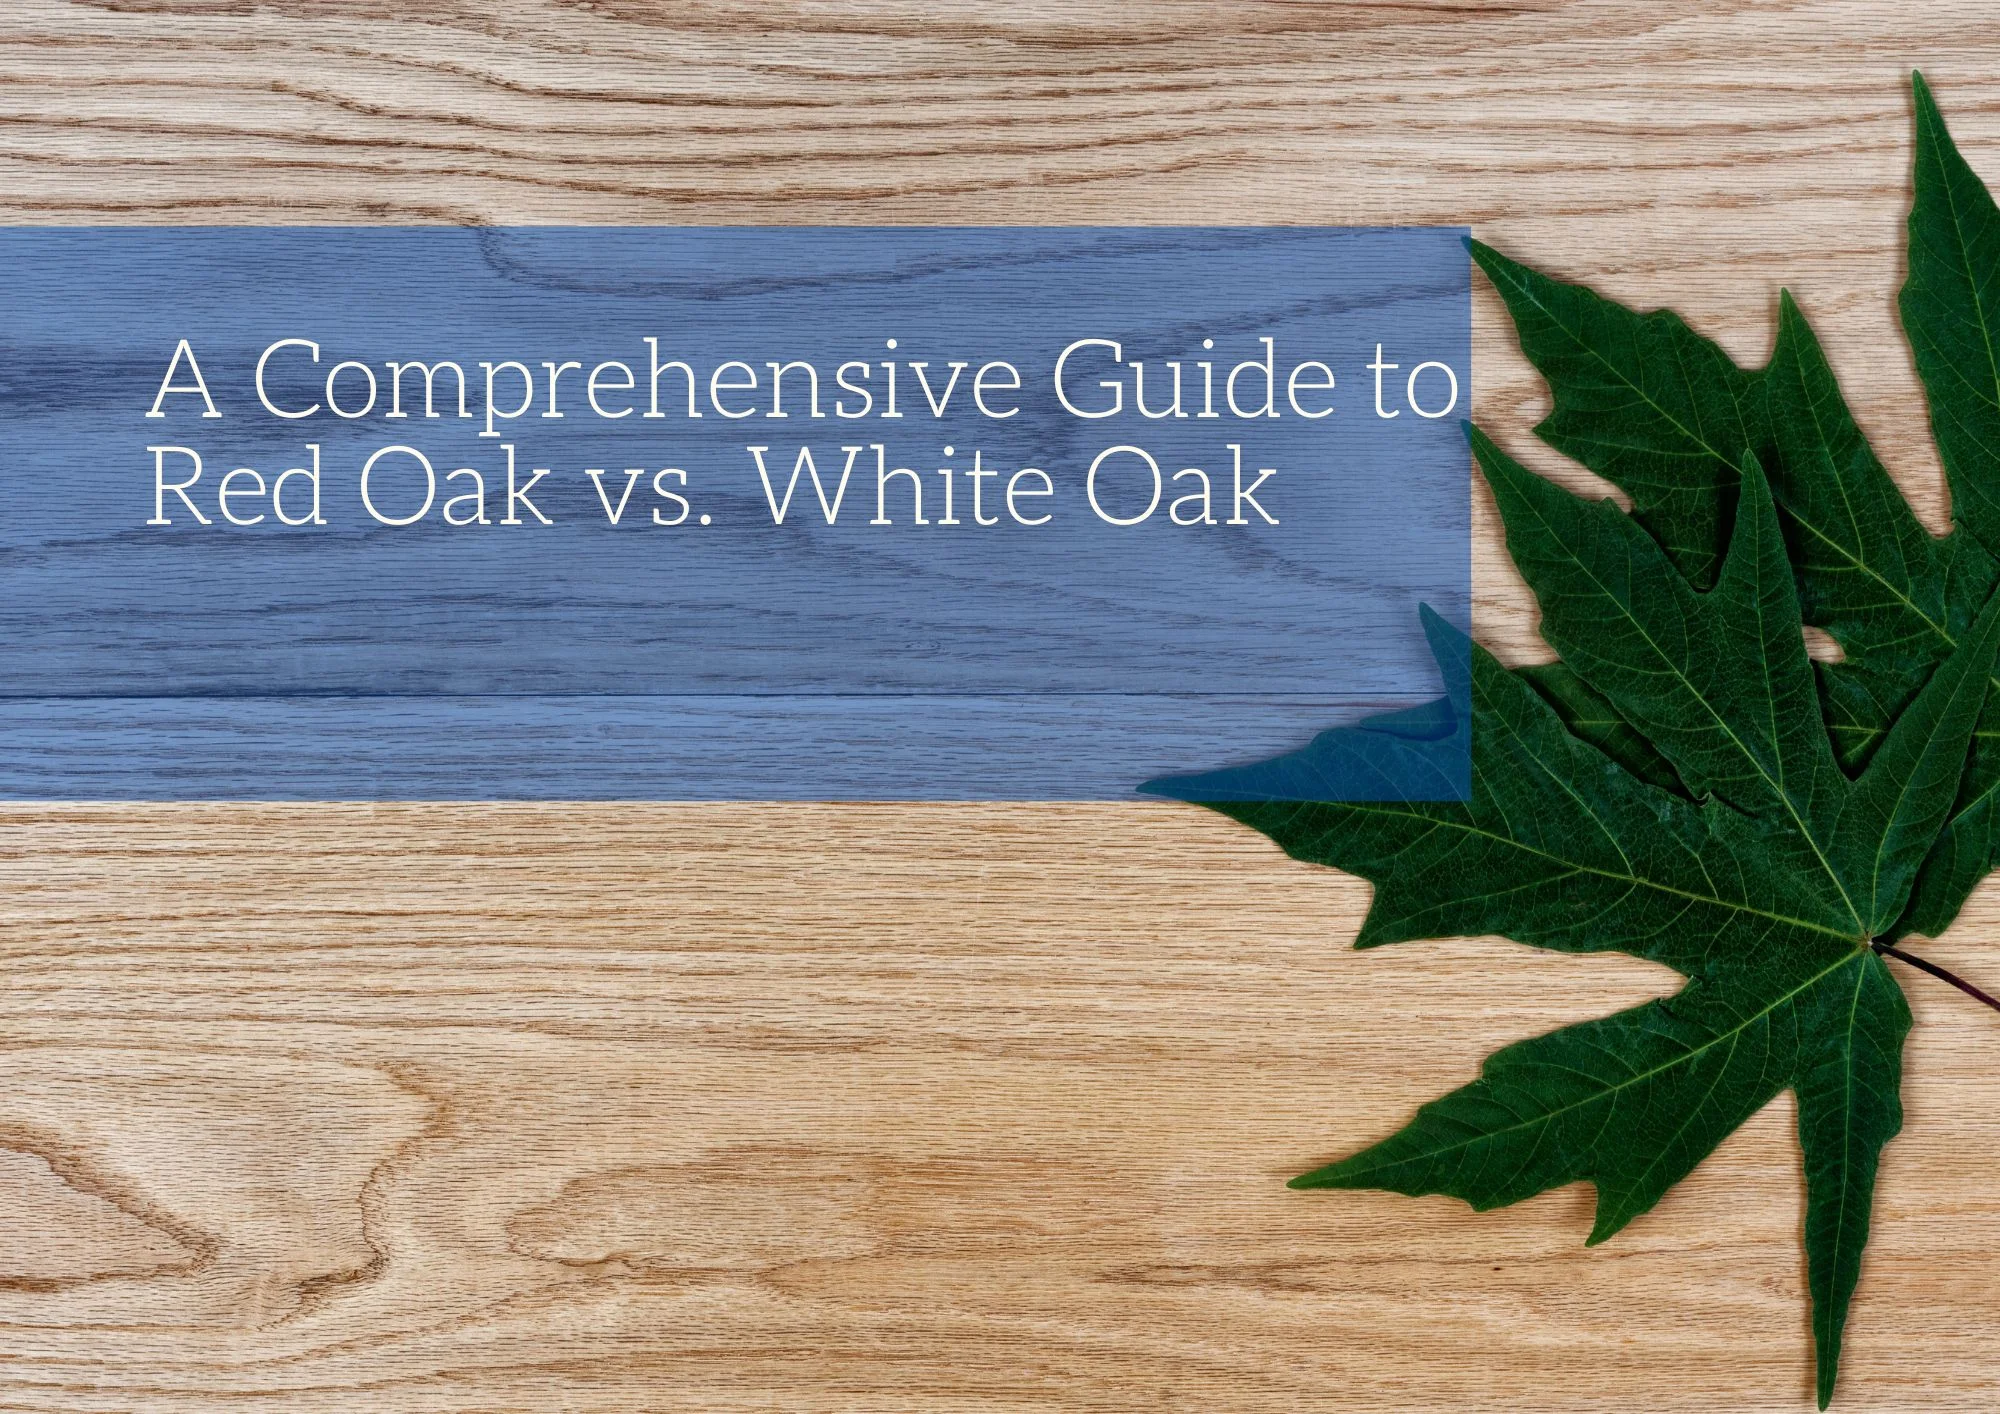 A Comprehensive Guide to Red Oak vs. White Oak